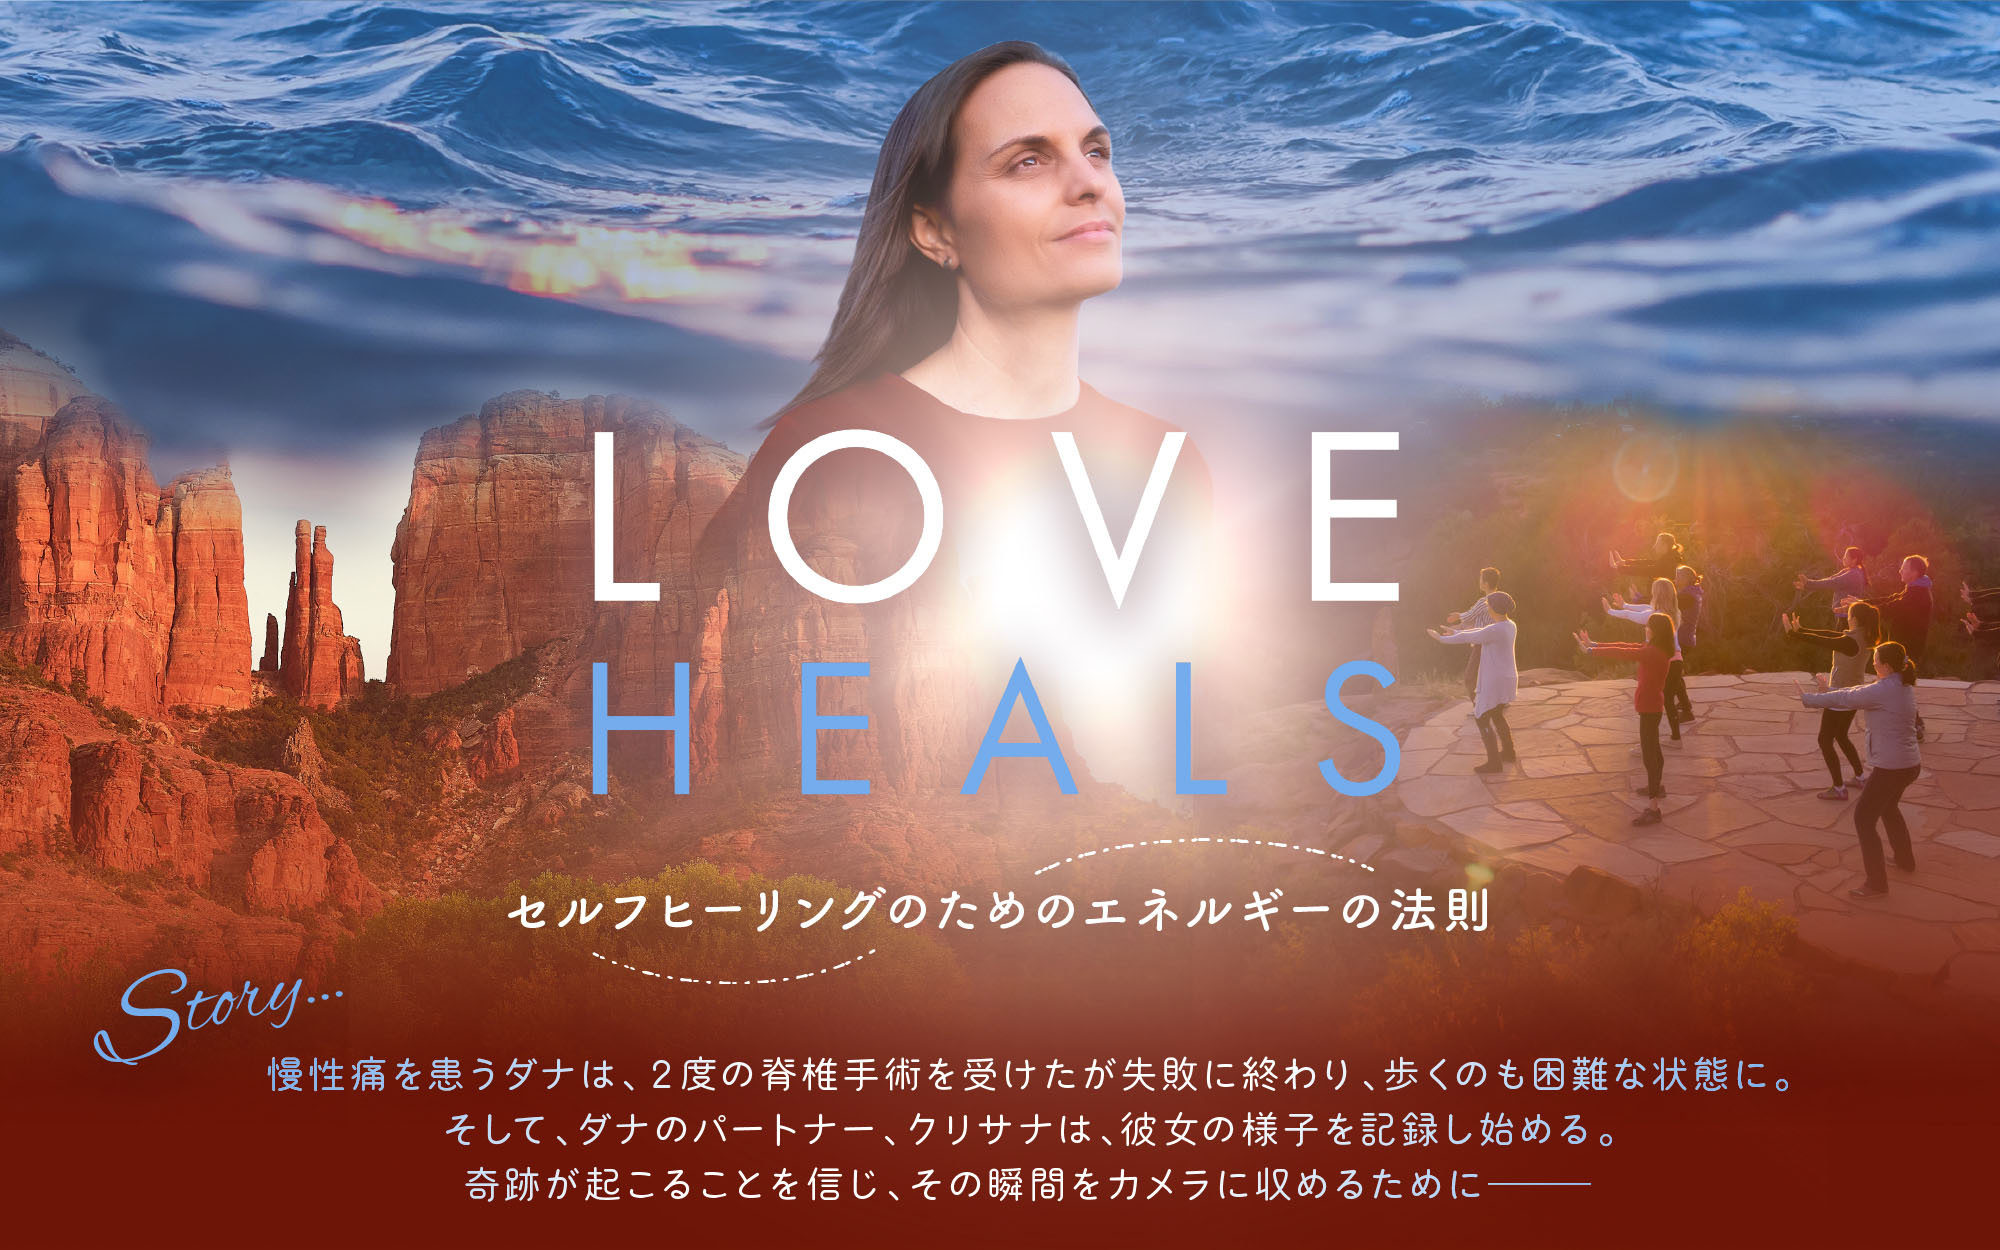 あなたの内に眠る自然治癒力を目覚めさせる映画｢LOVE HEALS｣上映会&体験会